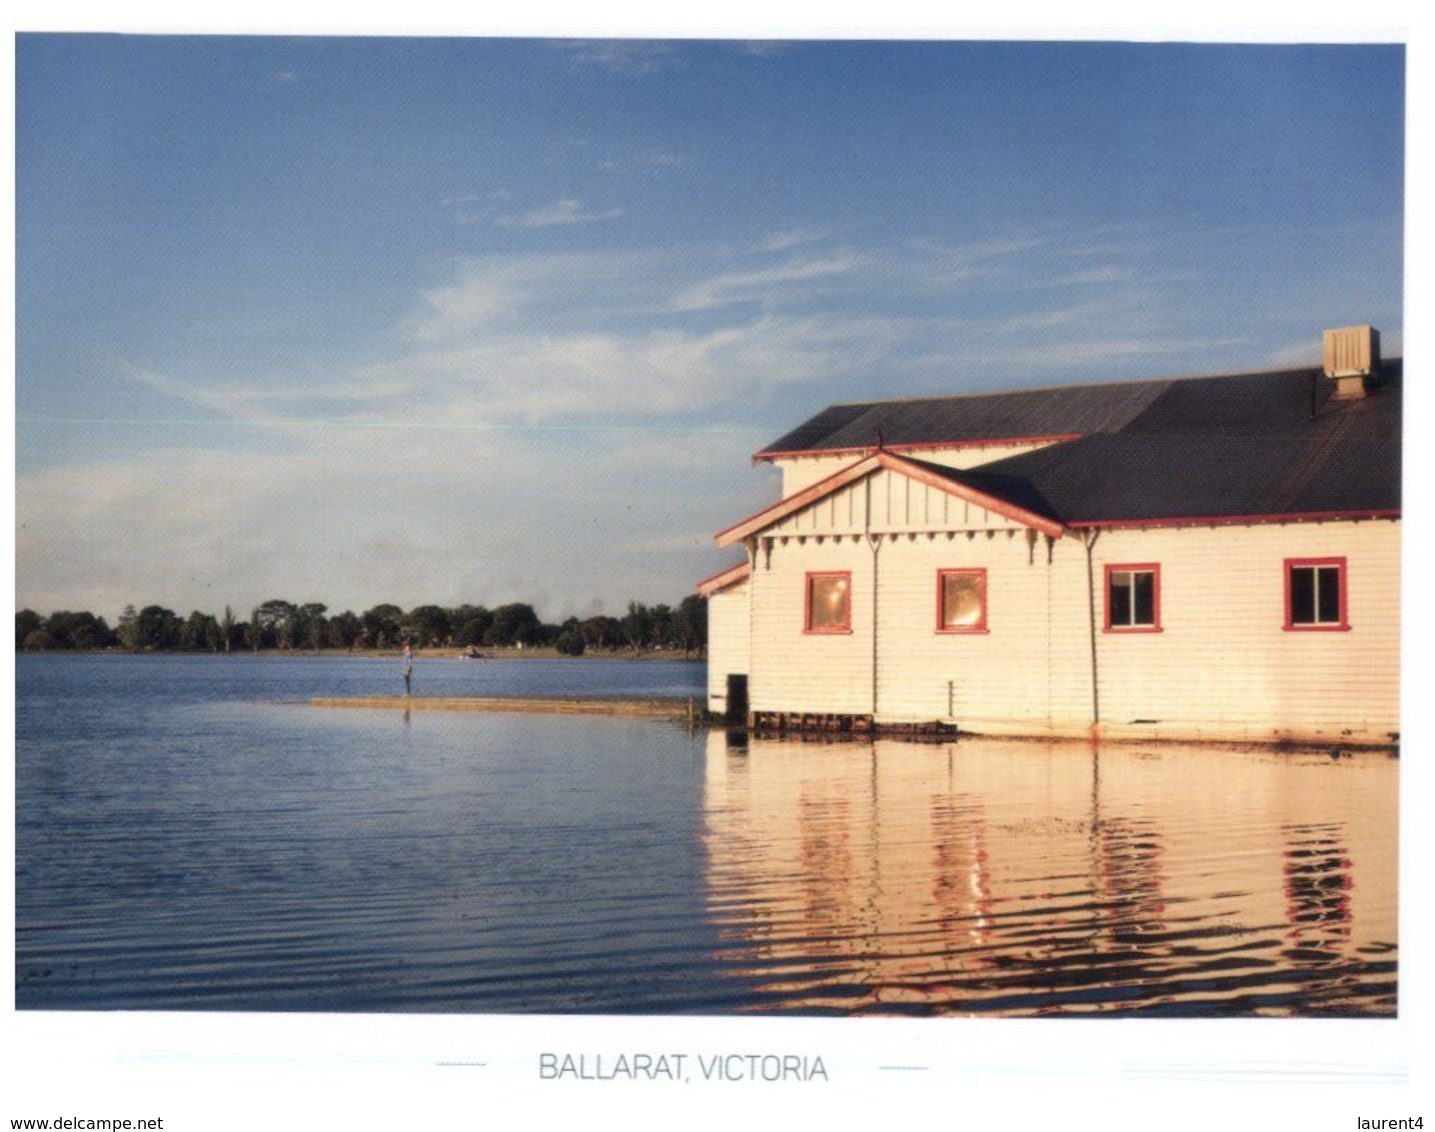 (A 36) Australia - VIC - Ballarat - Ballarat